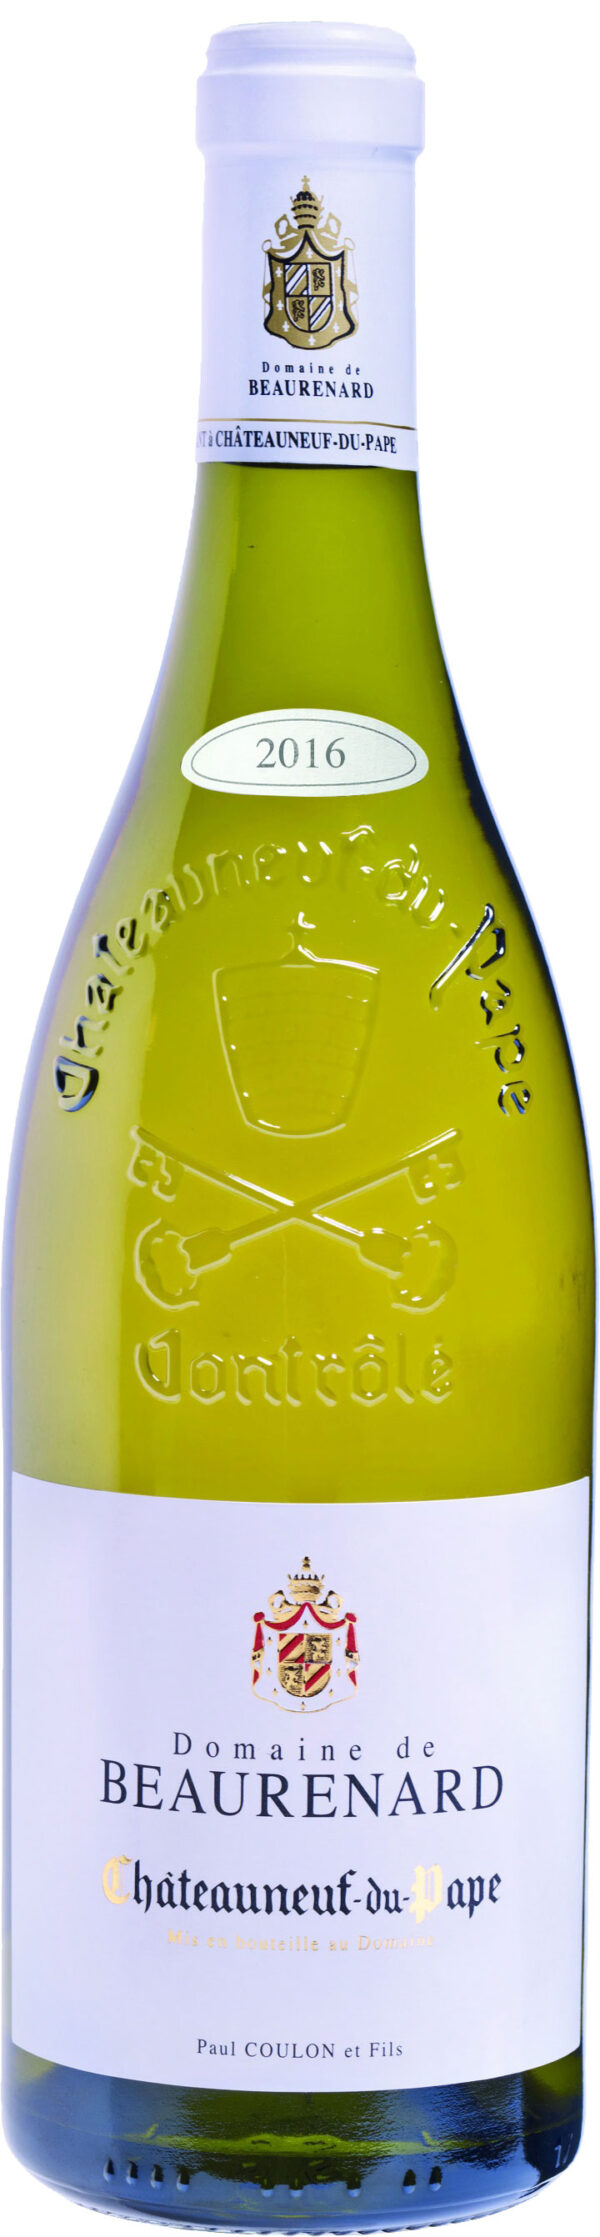 Domaine de Beaurenard - Chateauneuf-du-Pape Blanc 2018 75cl Bottle